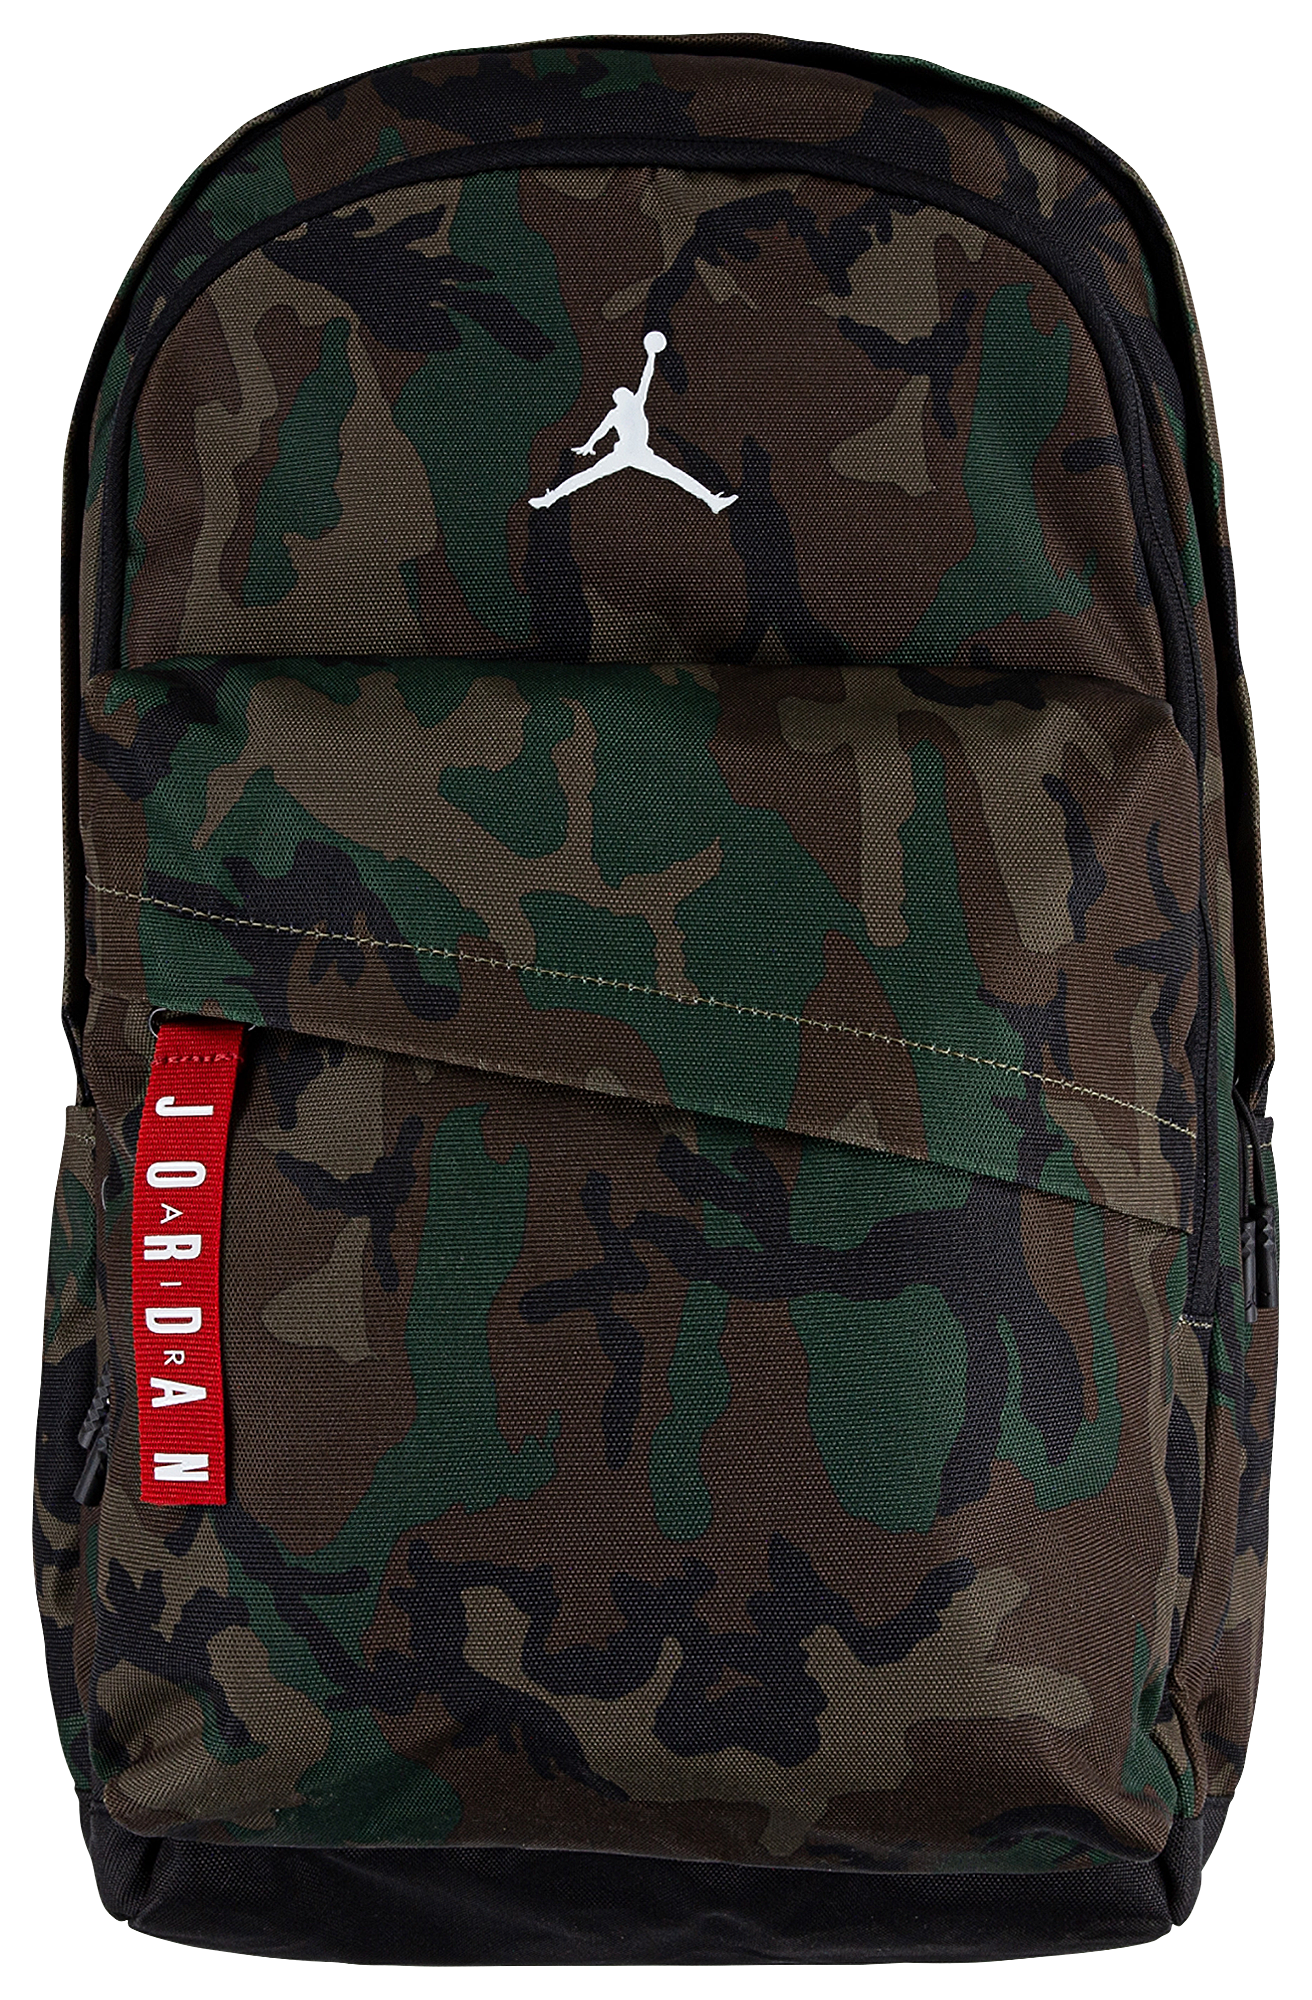 michael jordan backpacks